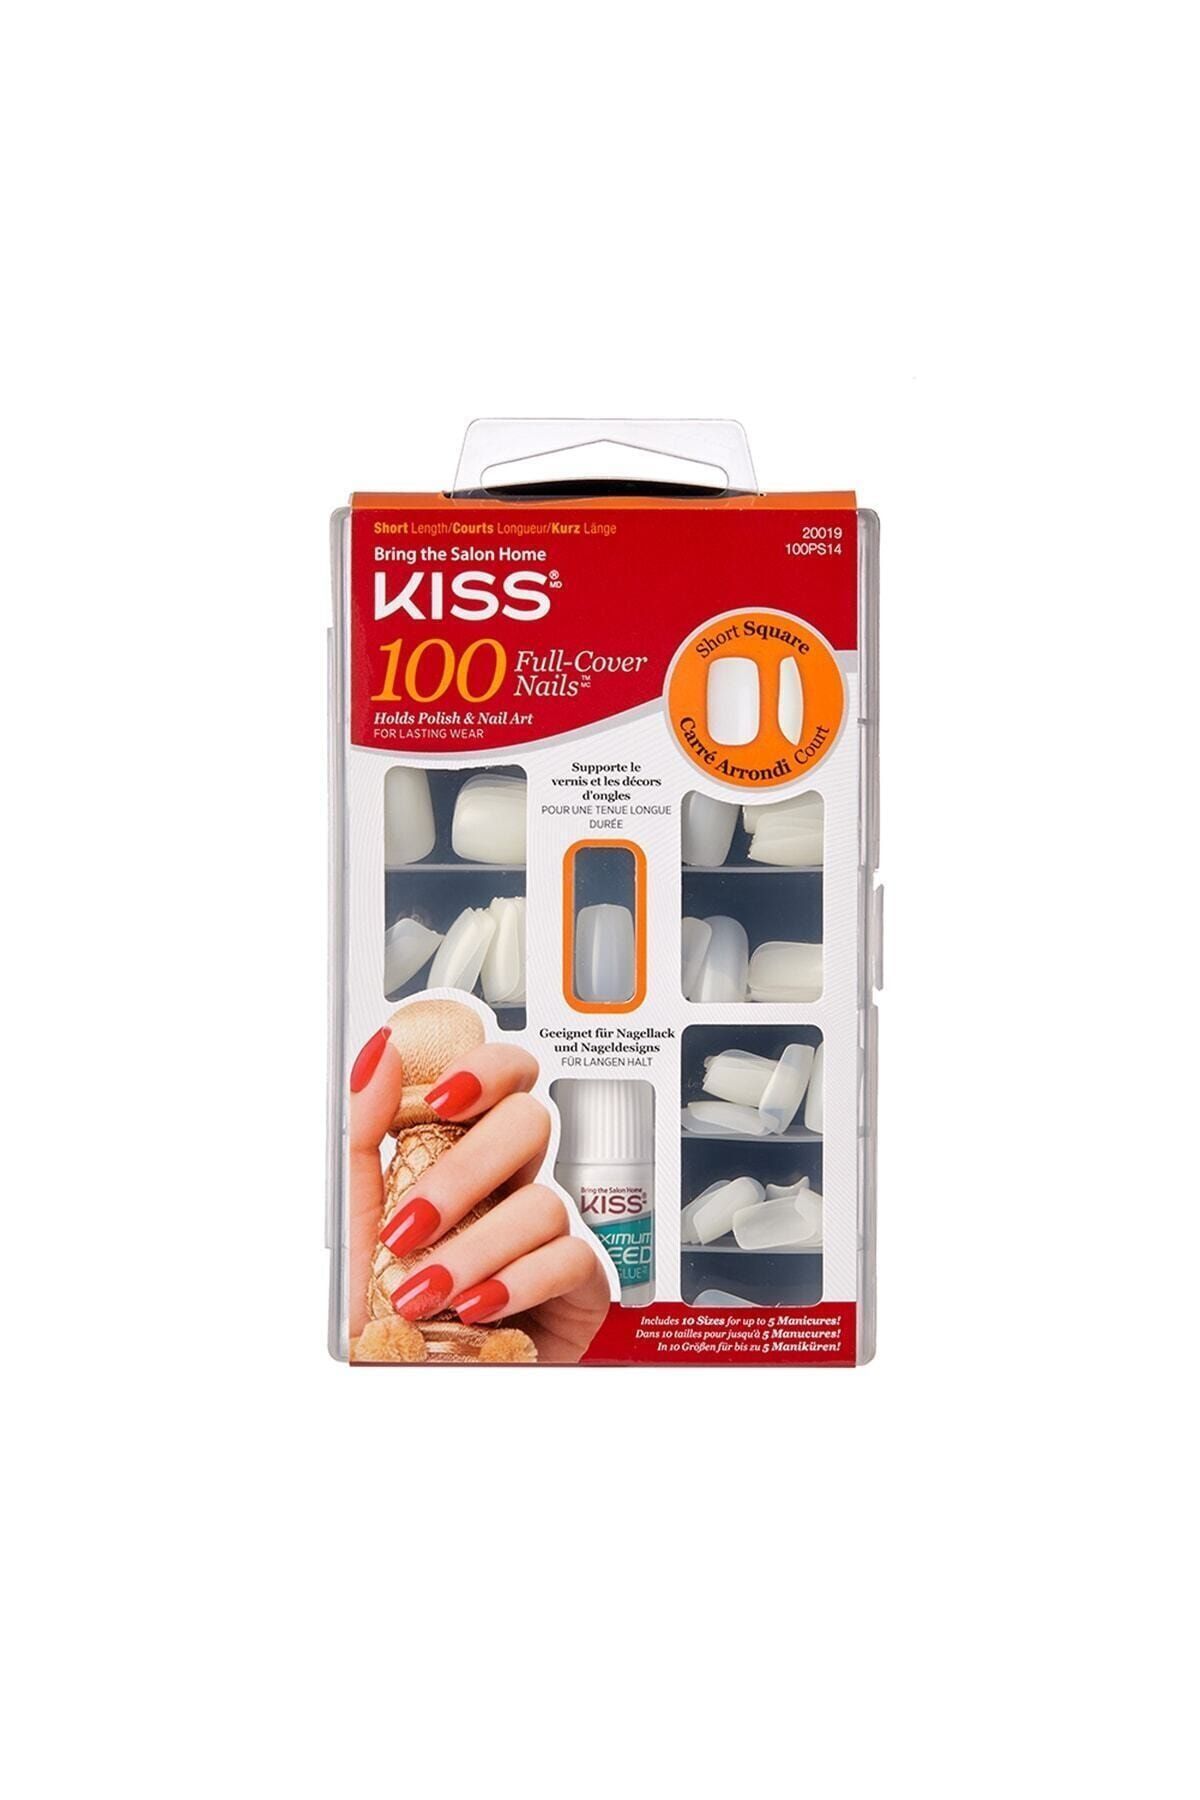 Kiss Renksiz Takma Tırnak Seti Ypıştırıcılı 100'lü Paket - 100ps14c - 731509200195